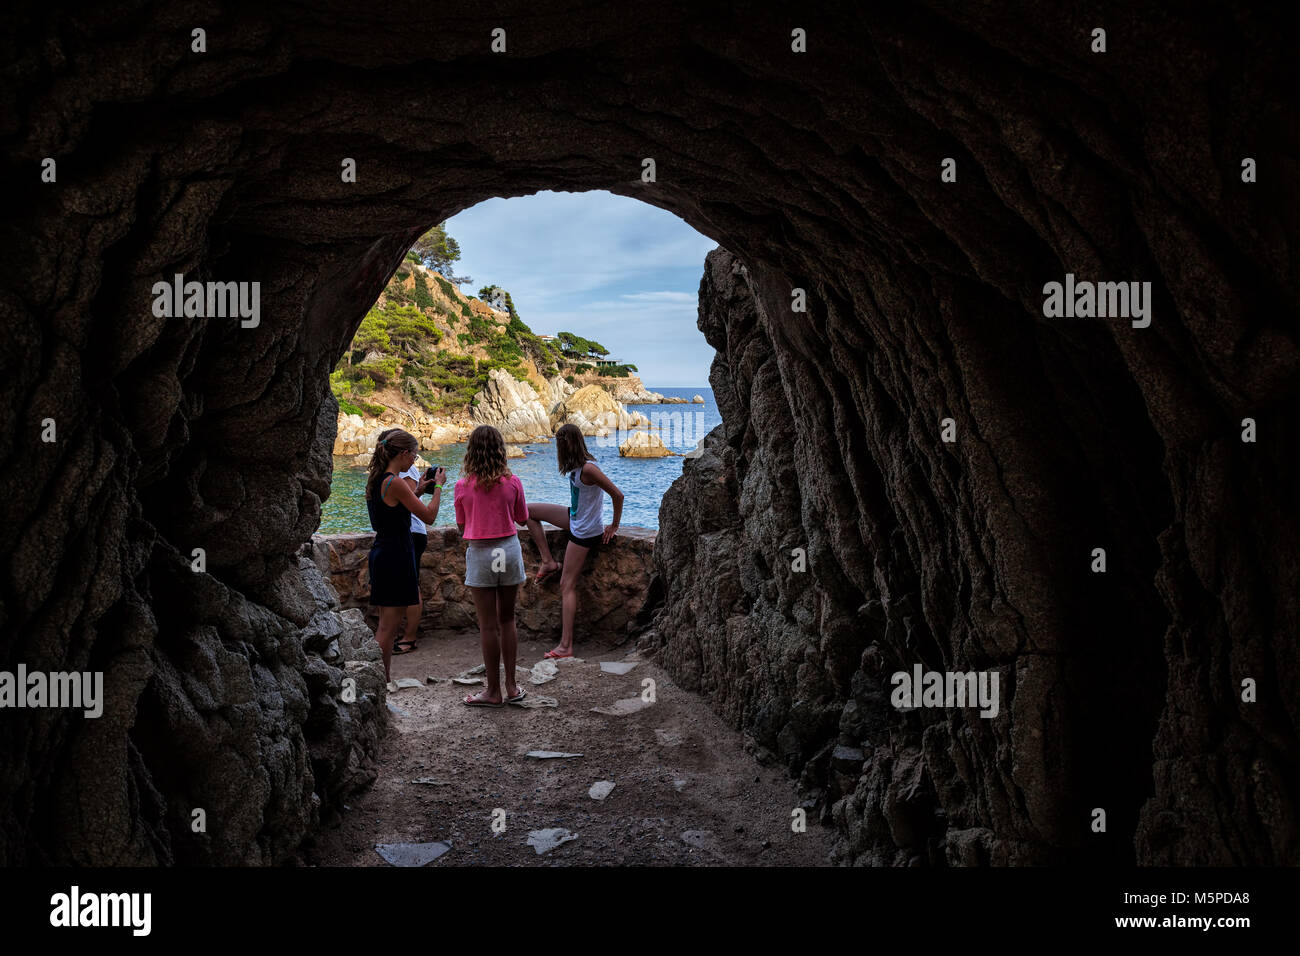 Küsten Höhle unterhalb der Klippe, Abenteuer Reisen, Landschaft, junge Mädchen zum Meer suchen, Lloret de Mar, Costa Brava, Katalonien, Spanien, Europa Stockfoto